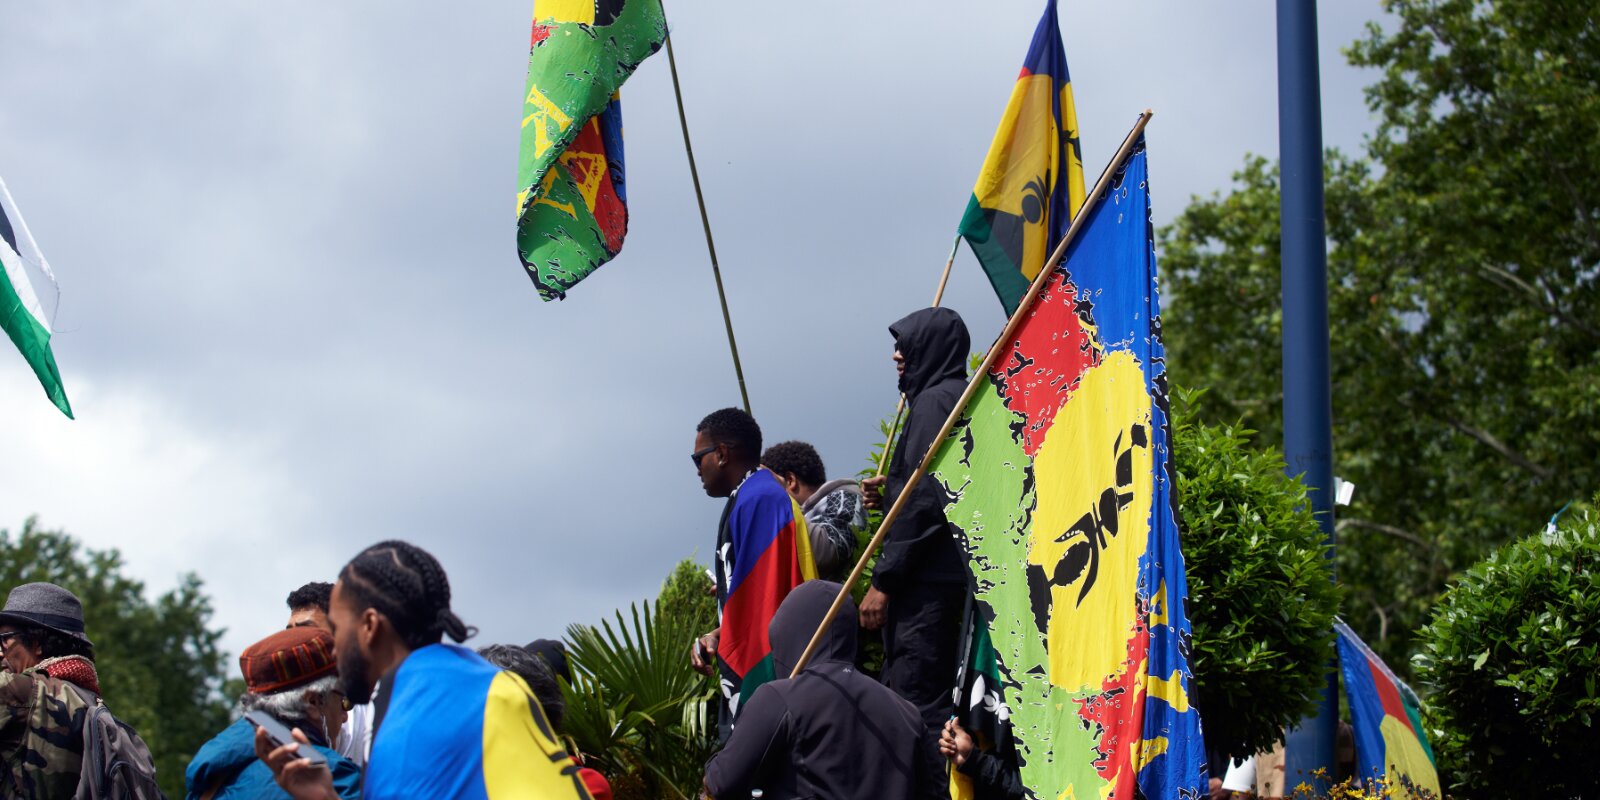 Neikaledonien: Lokal Regierung versicht Kontroll zeréck ze kréien | © picture alliance / NurPhoto | Alain Pitton